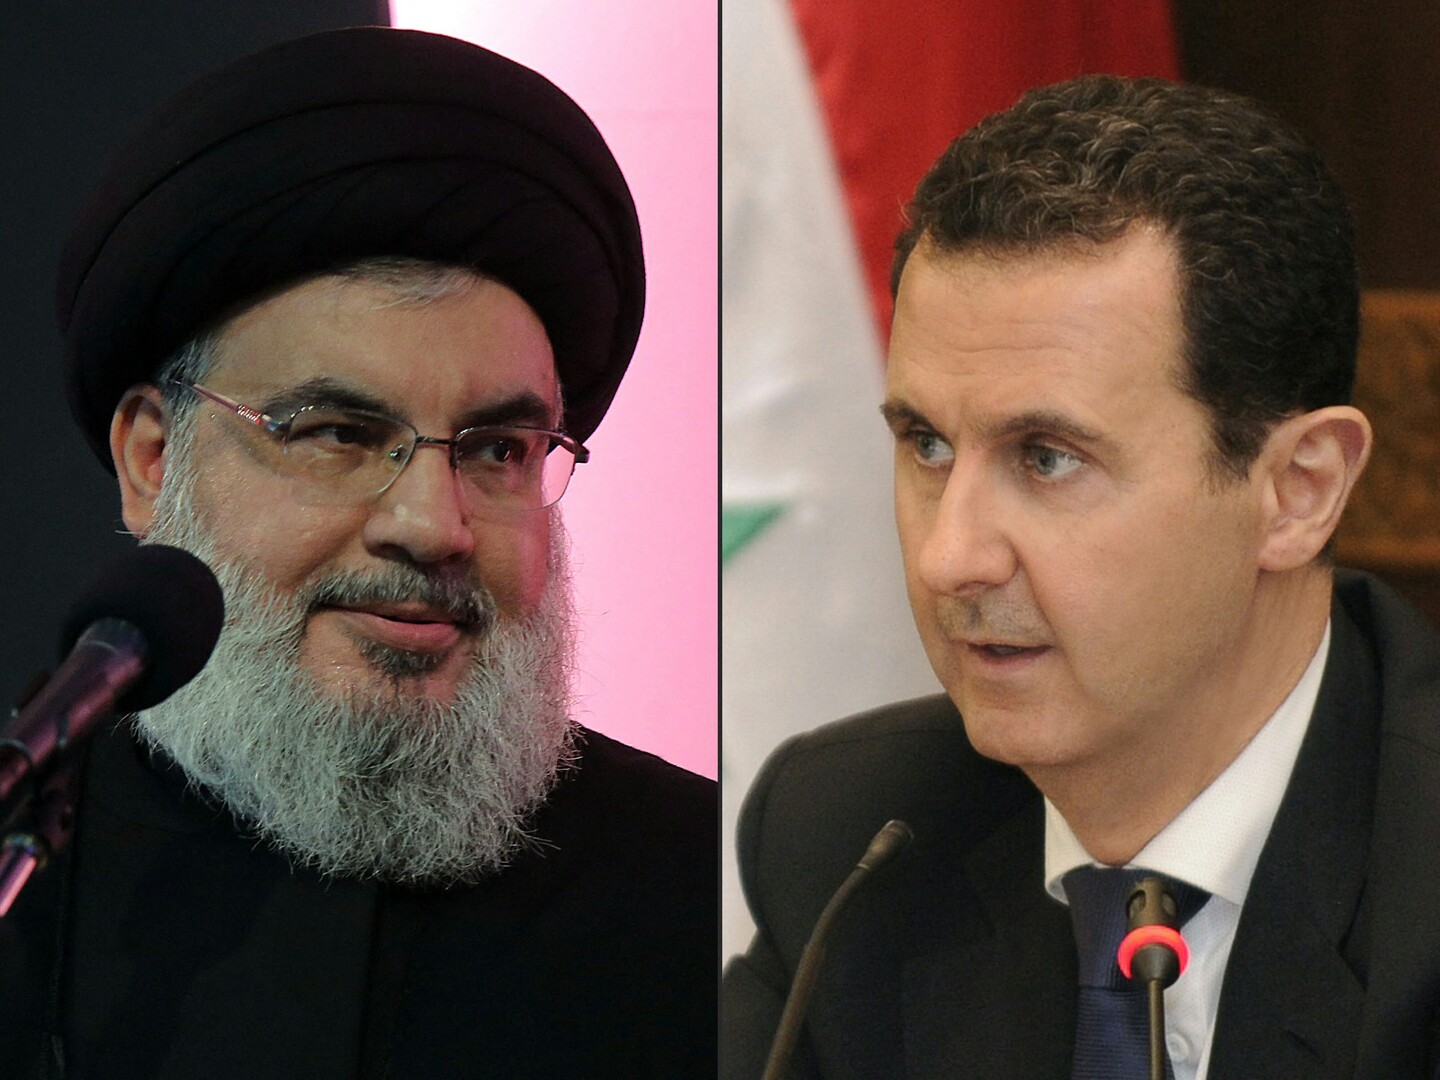 الرئيس السوري يعزي أمين عام حزب الله بوفاة والدته